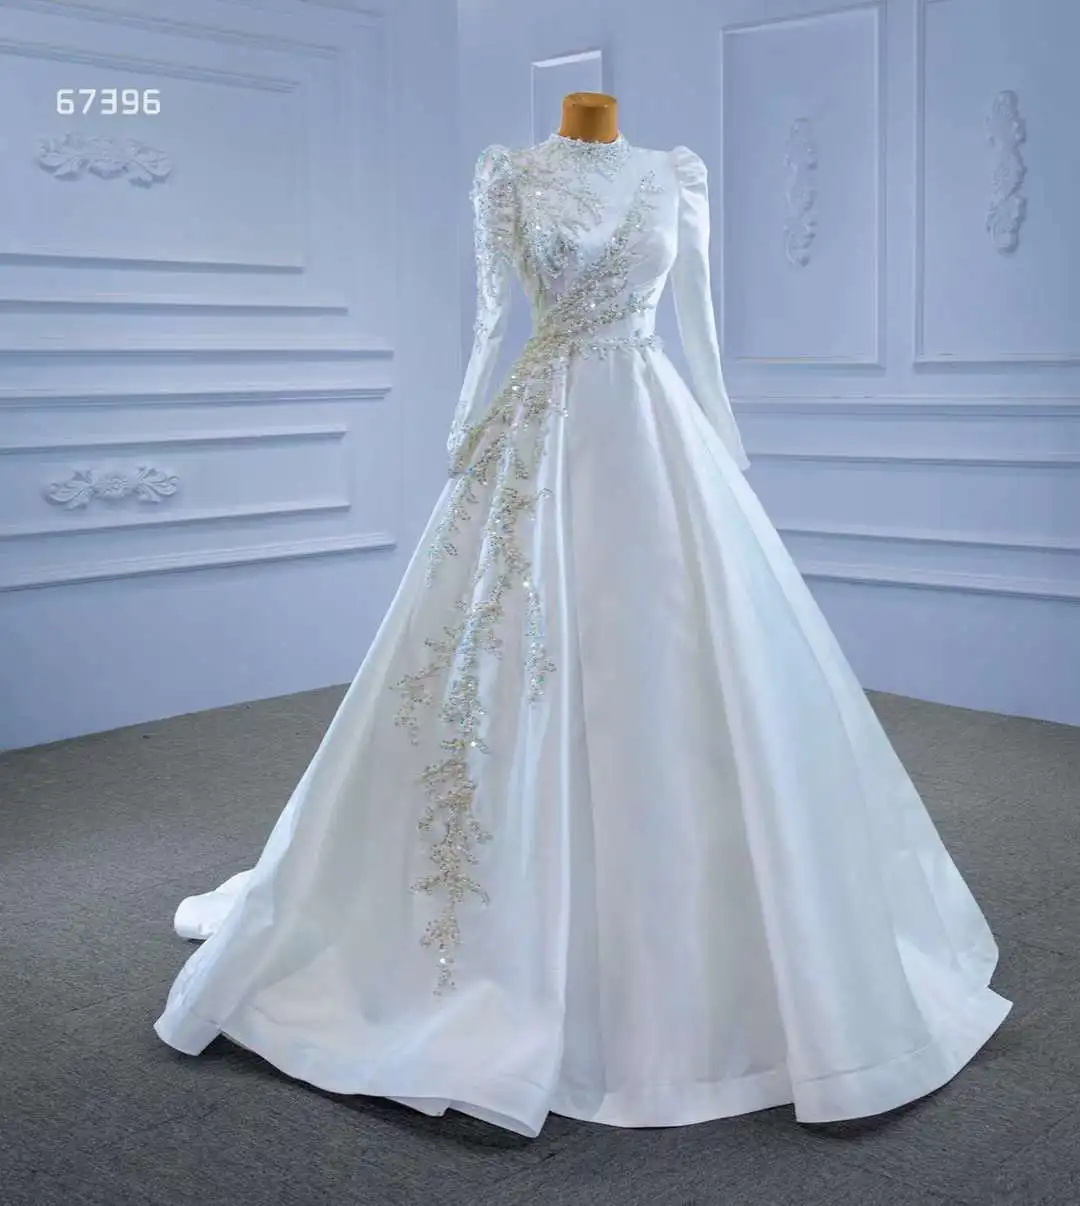 

Aoliweiya Bridal #67396 30cm Train Satin Muslim Wedding Dress